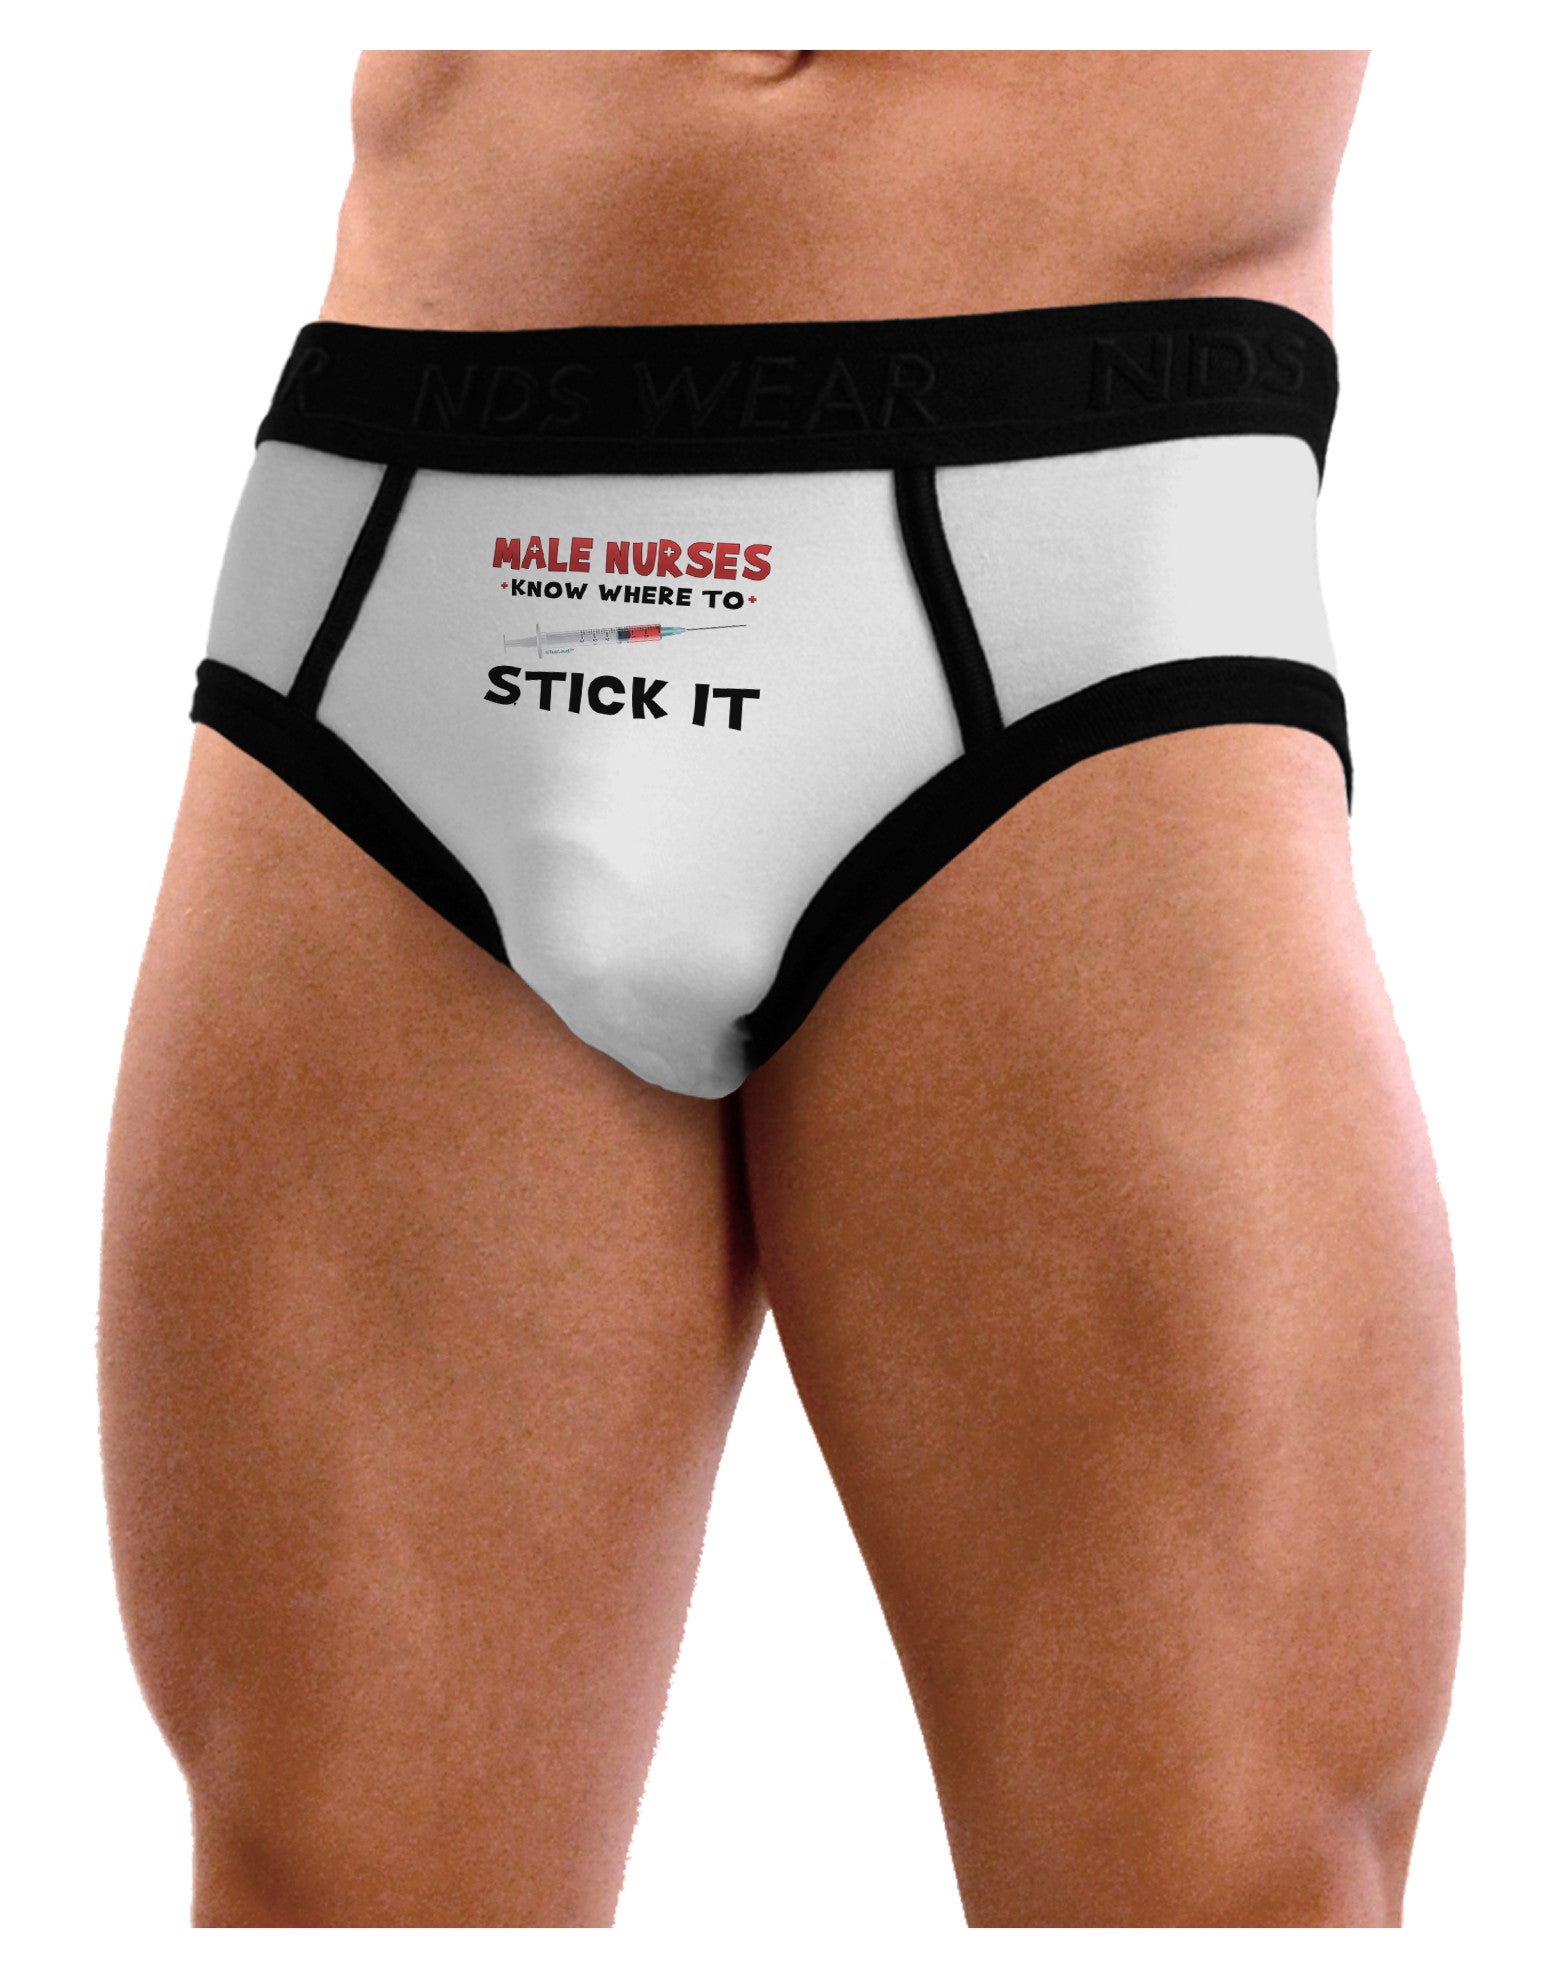 Male Nurses - Stick It Mens NDS Wear Briefs Underwear